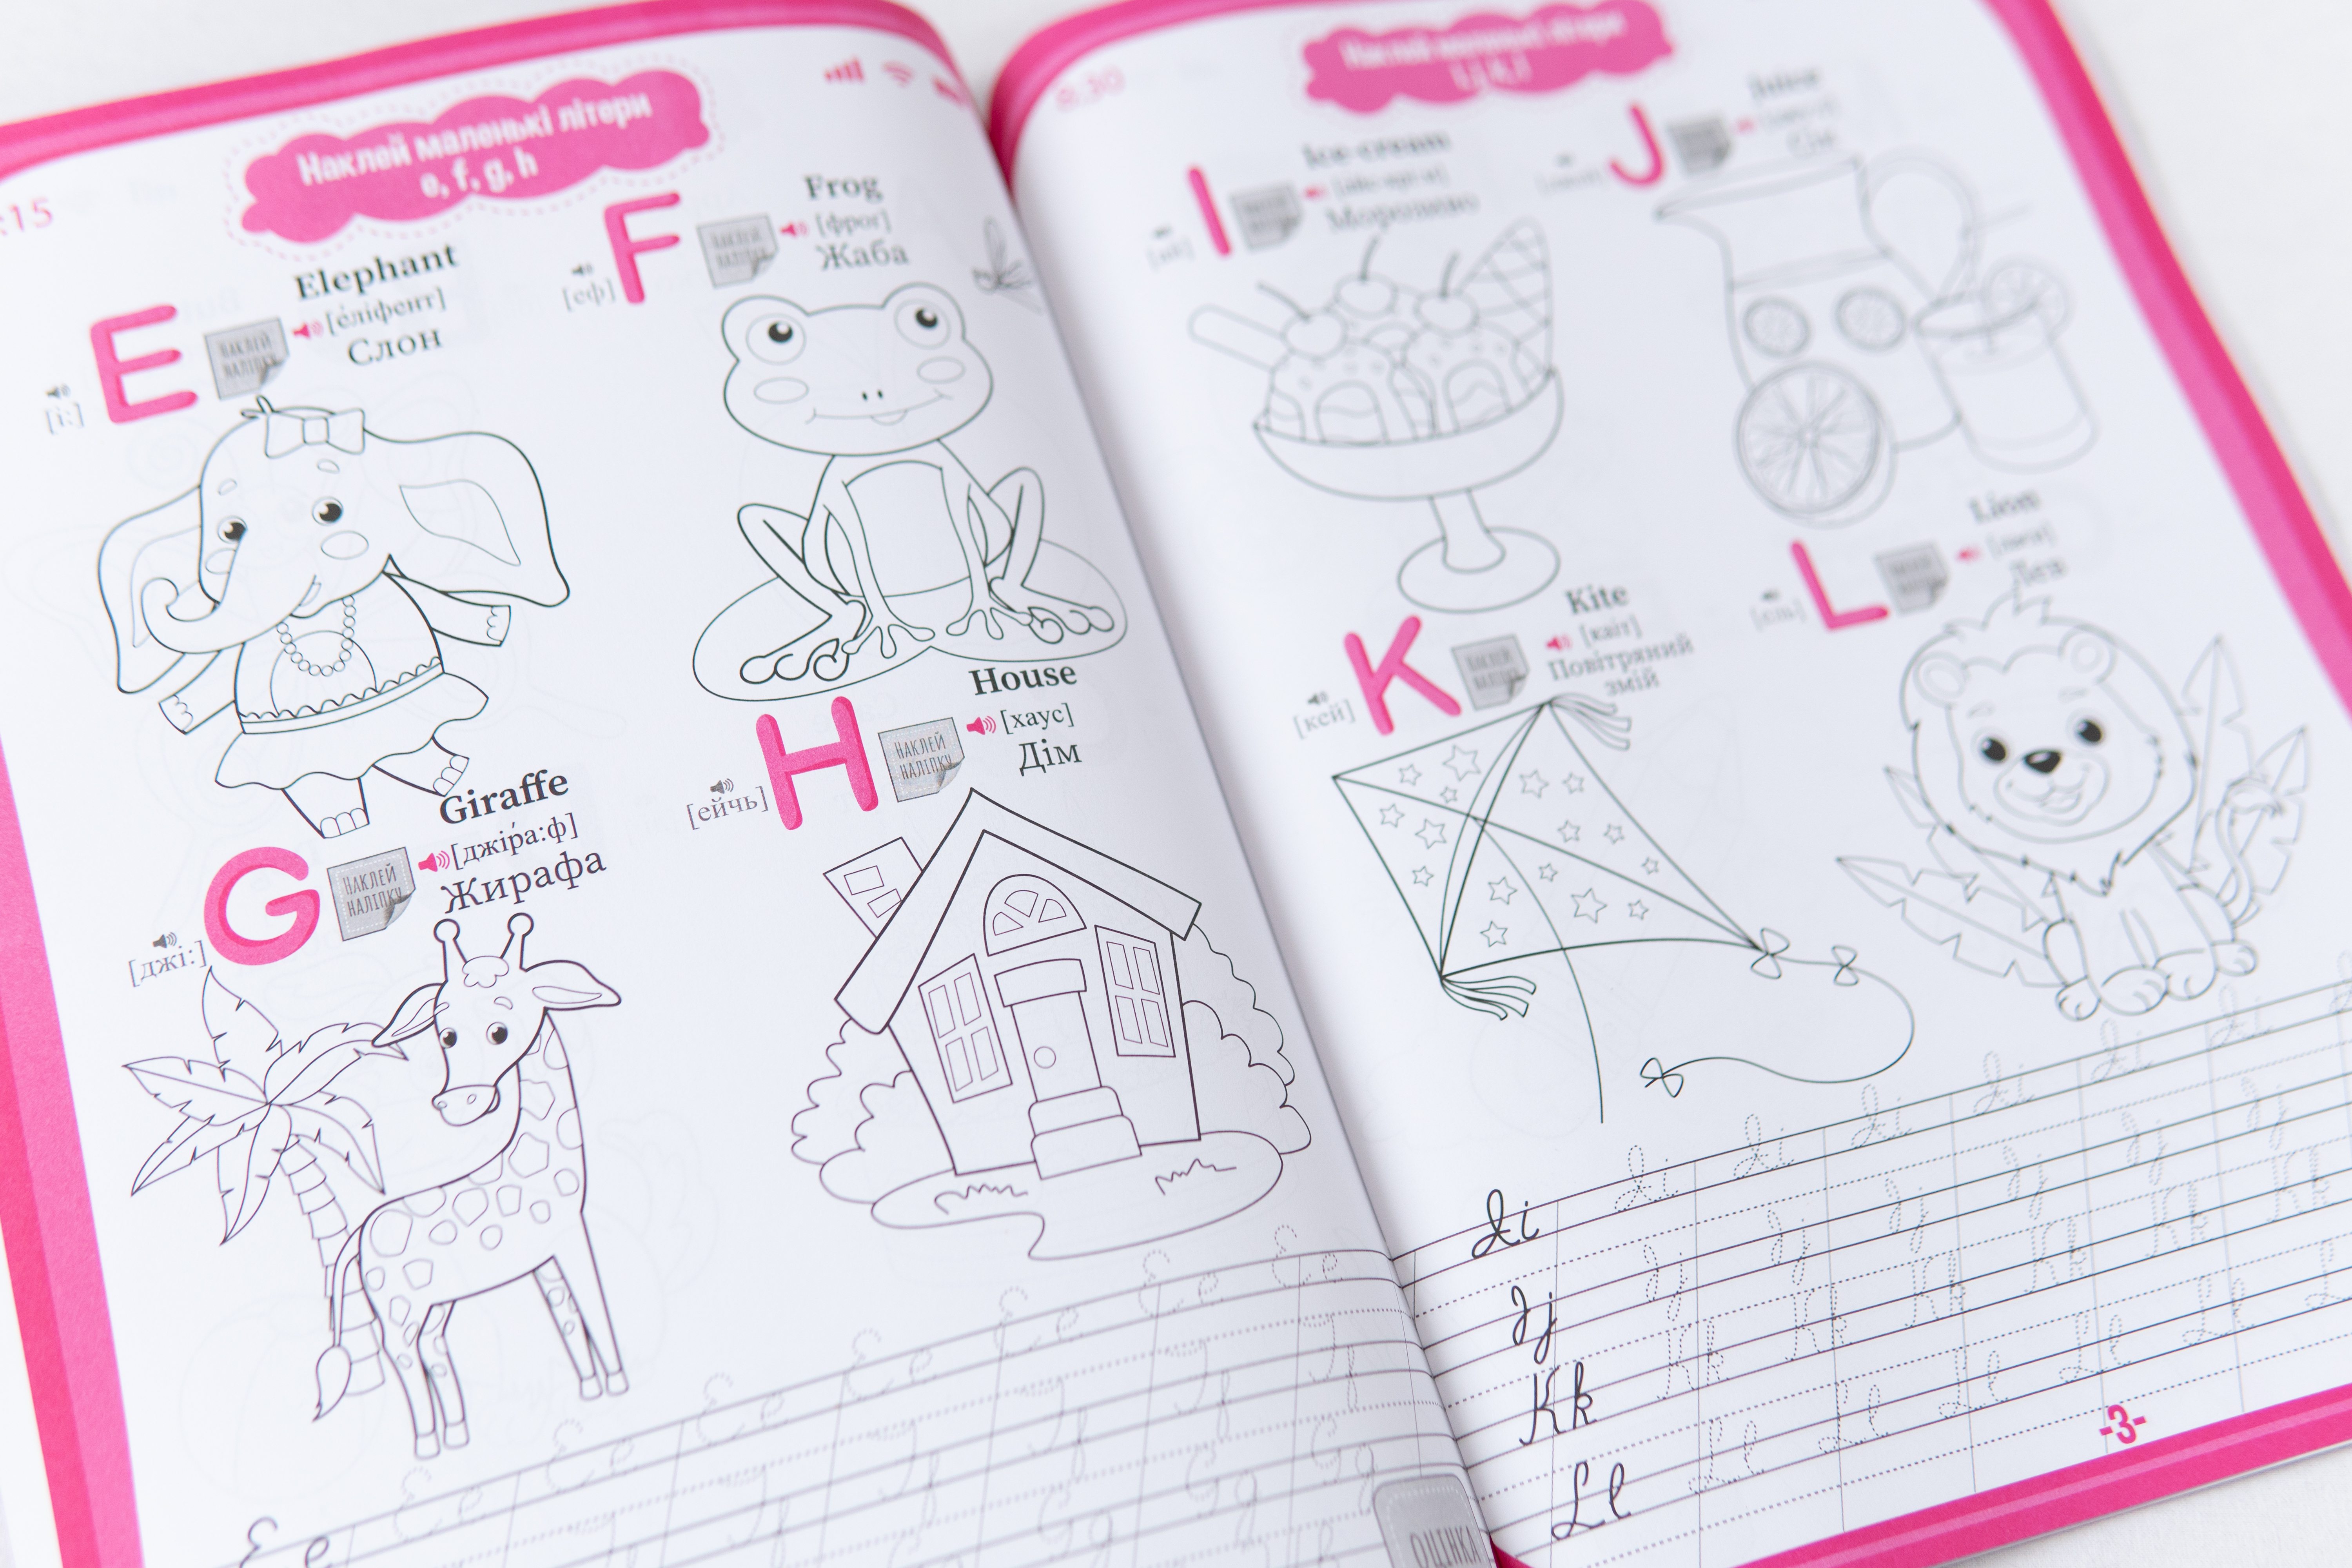 Lern-Tablet Englisch für Kleinkinder - Vorbereitung auf die Schule/Lern-Tablet Englisch für Kleinkinder - Vorbereitung auf die Schule